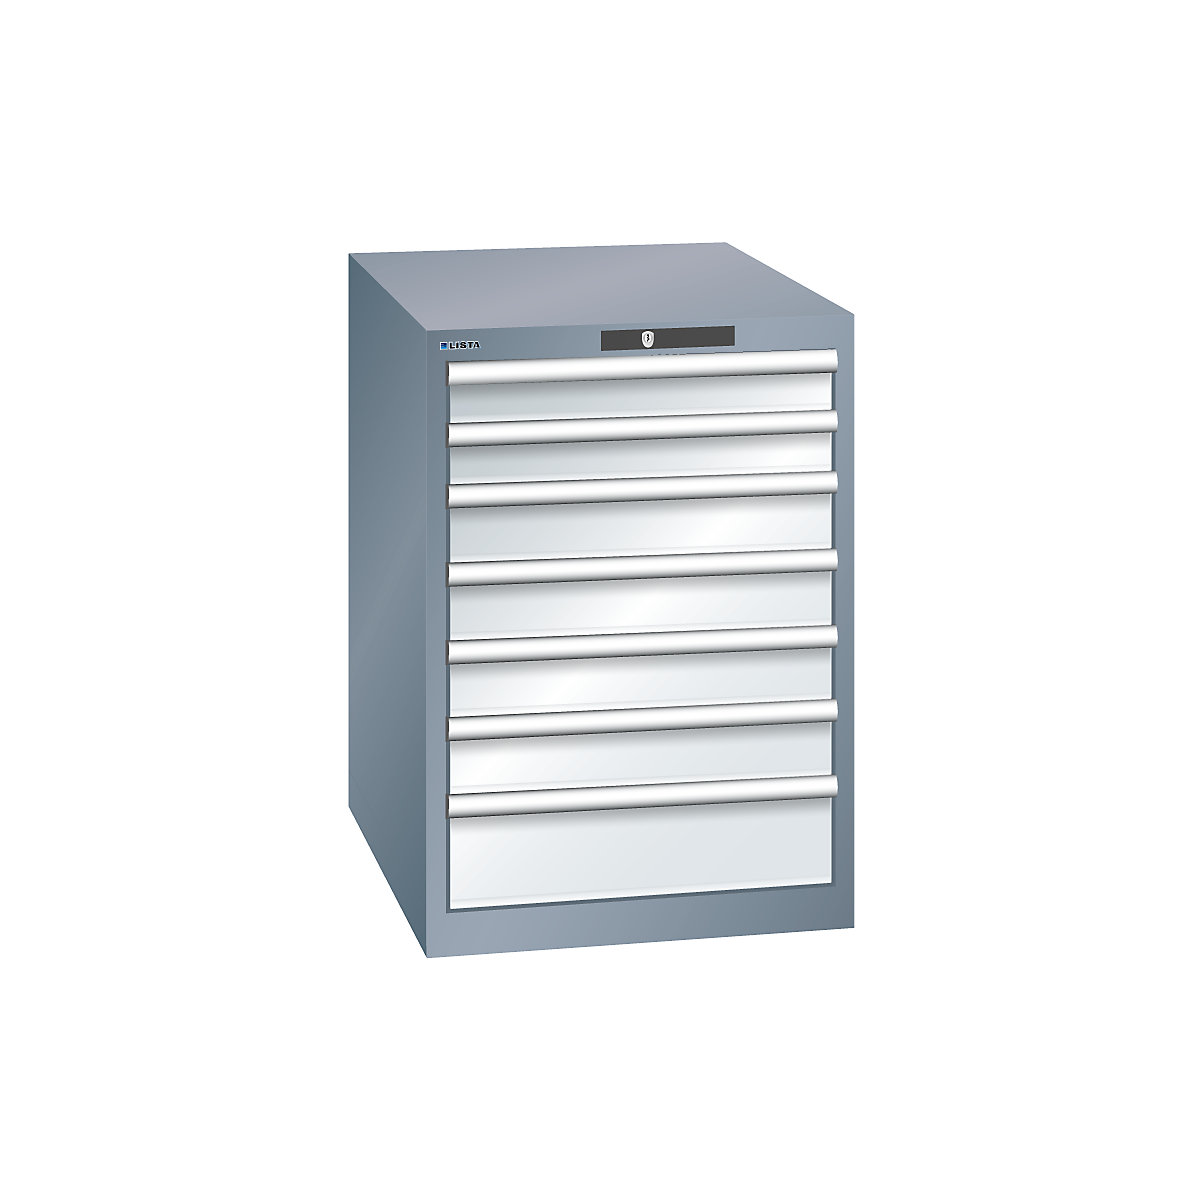 LISTA – Armoire à tiroirs en tôle d'acier, h x l 800 x 564 mm, 7 tiroirs, gris métallisé / gris clair